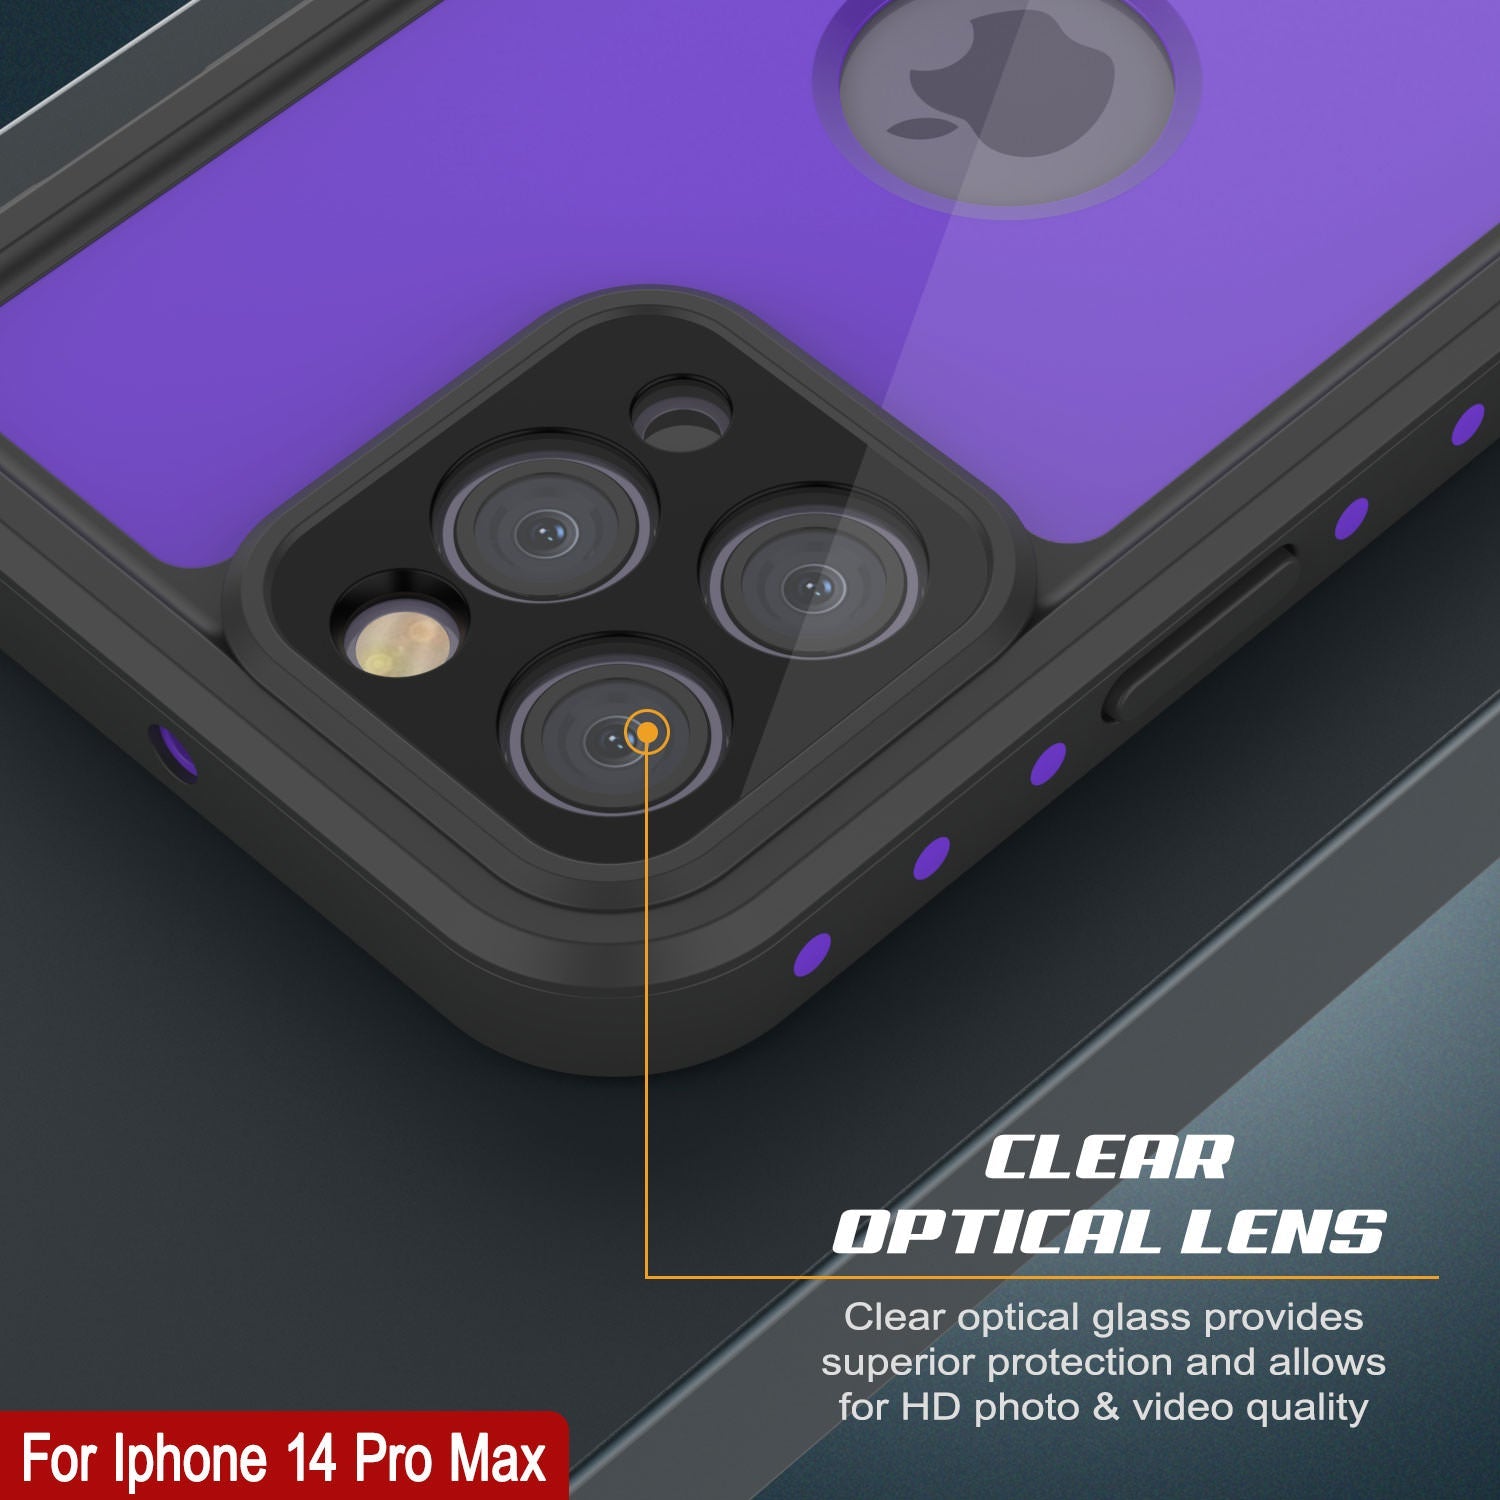 iPhone 14 Pro Max Waterproof IP68 Case, Punkcase [Purple] [StudStar Series] [Slim Fit] [Dirtproof]